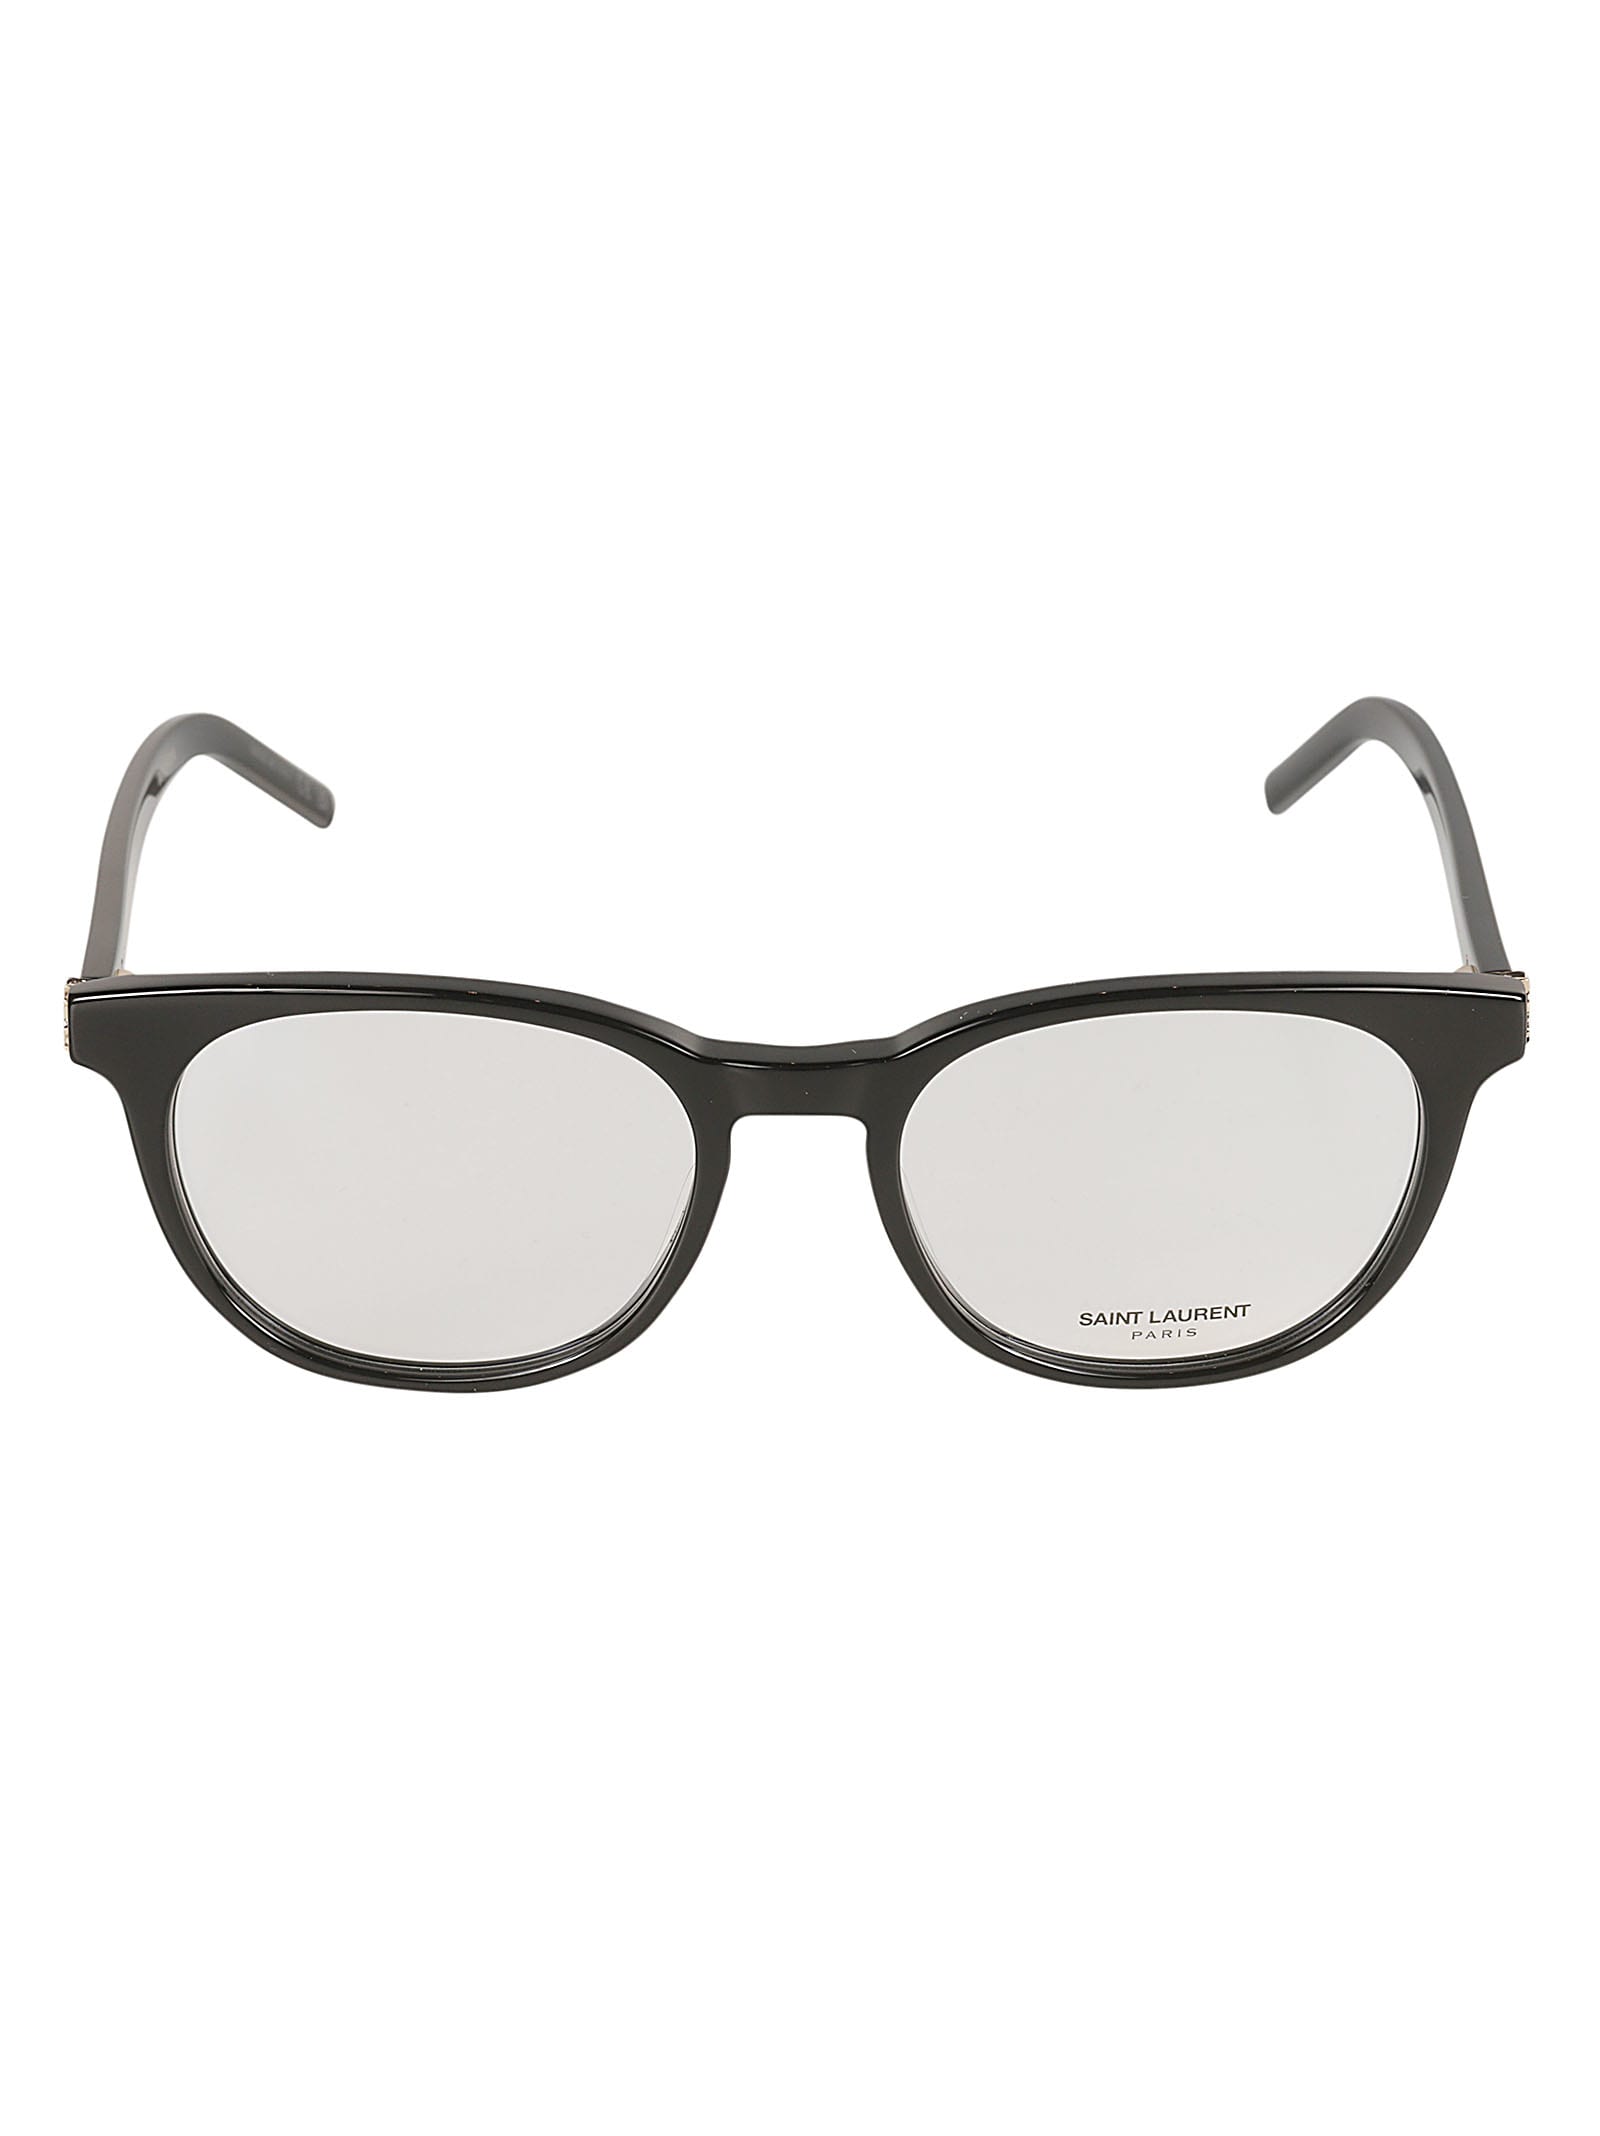 Saint Laurent Round Frame Classic Glasses In Black/transparent